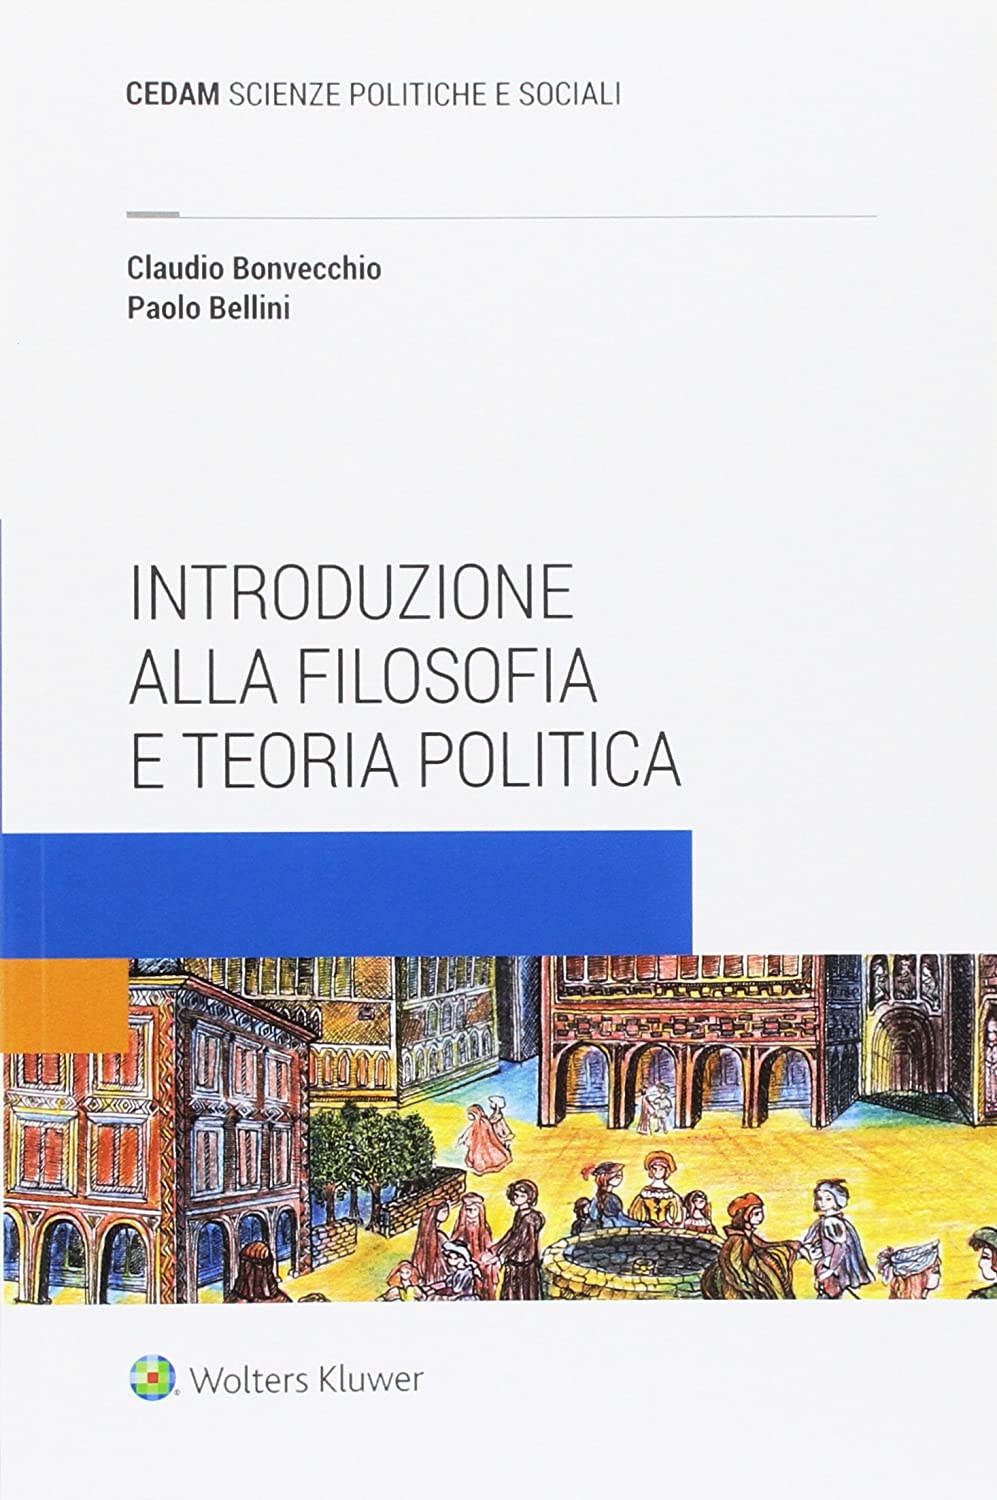 Libri Bellini Paolo / Claudio Bonvecchio - Manuale Filosofia Politica NUOVO SIGILLATO, EDIZIONE DEL 11/10/2017 SUBITO DISPONIBILE